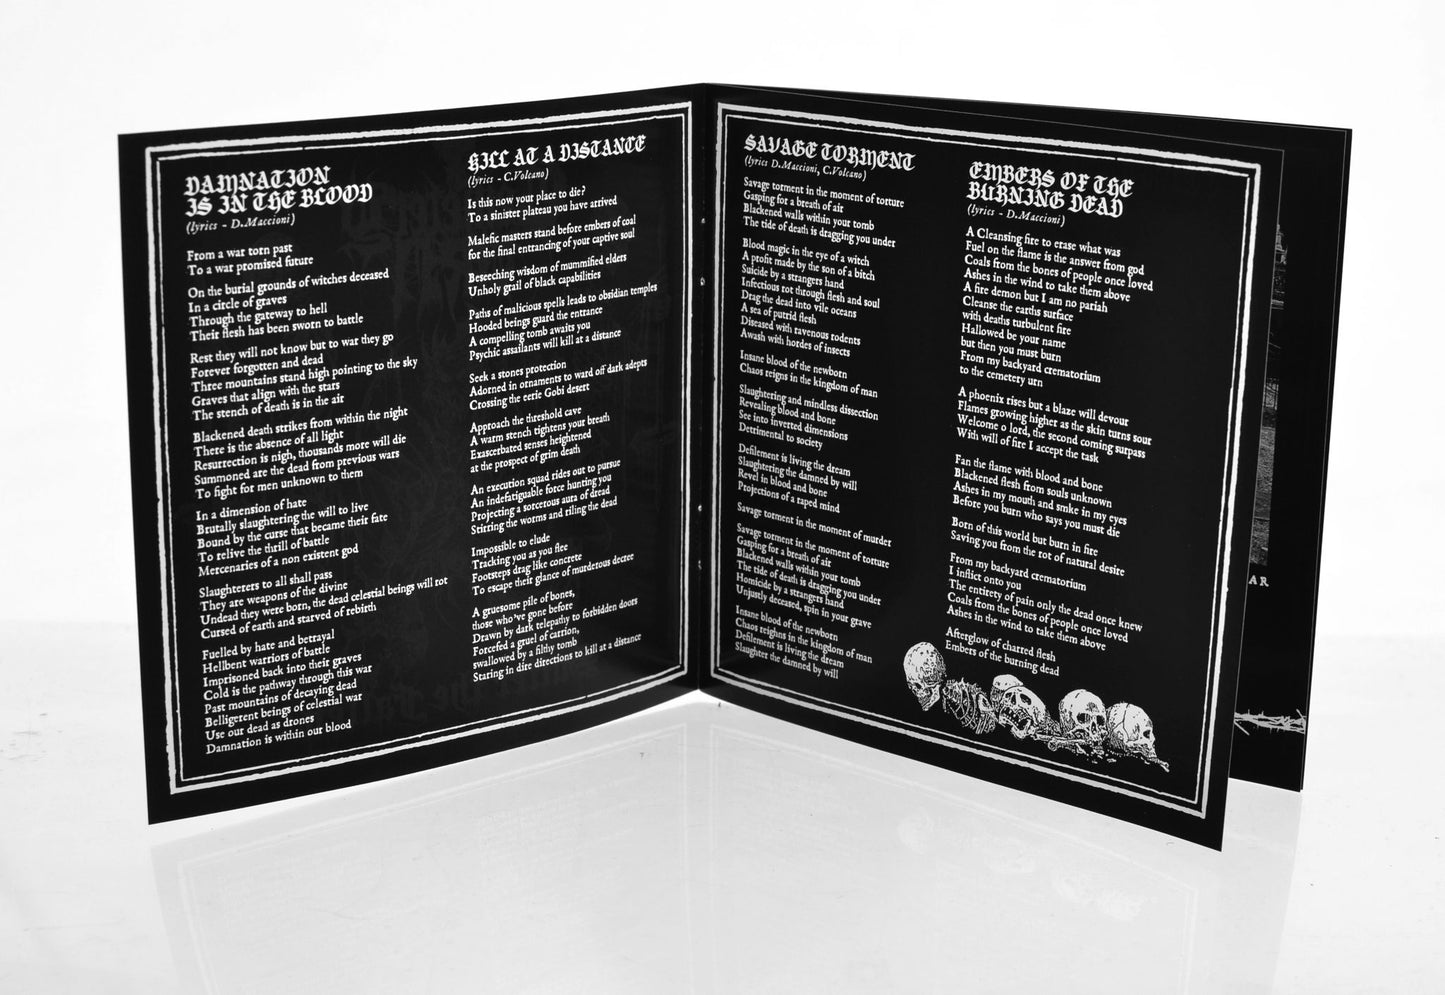 CEMETERY URN - Suffer The Fallen (CD) - Death Metal aus Australien